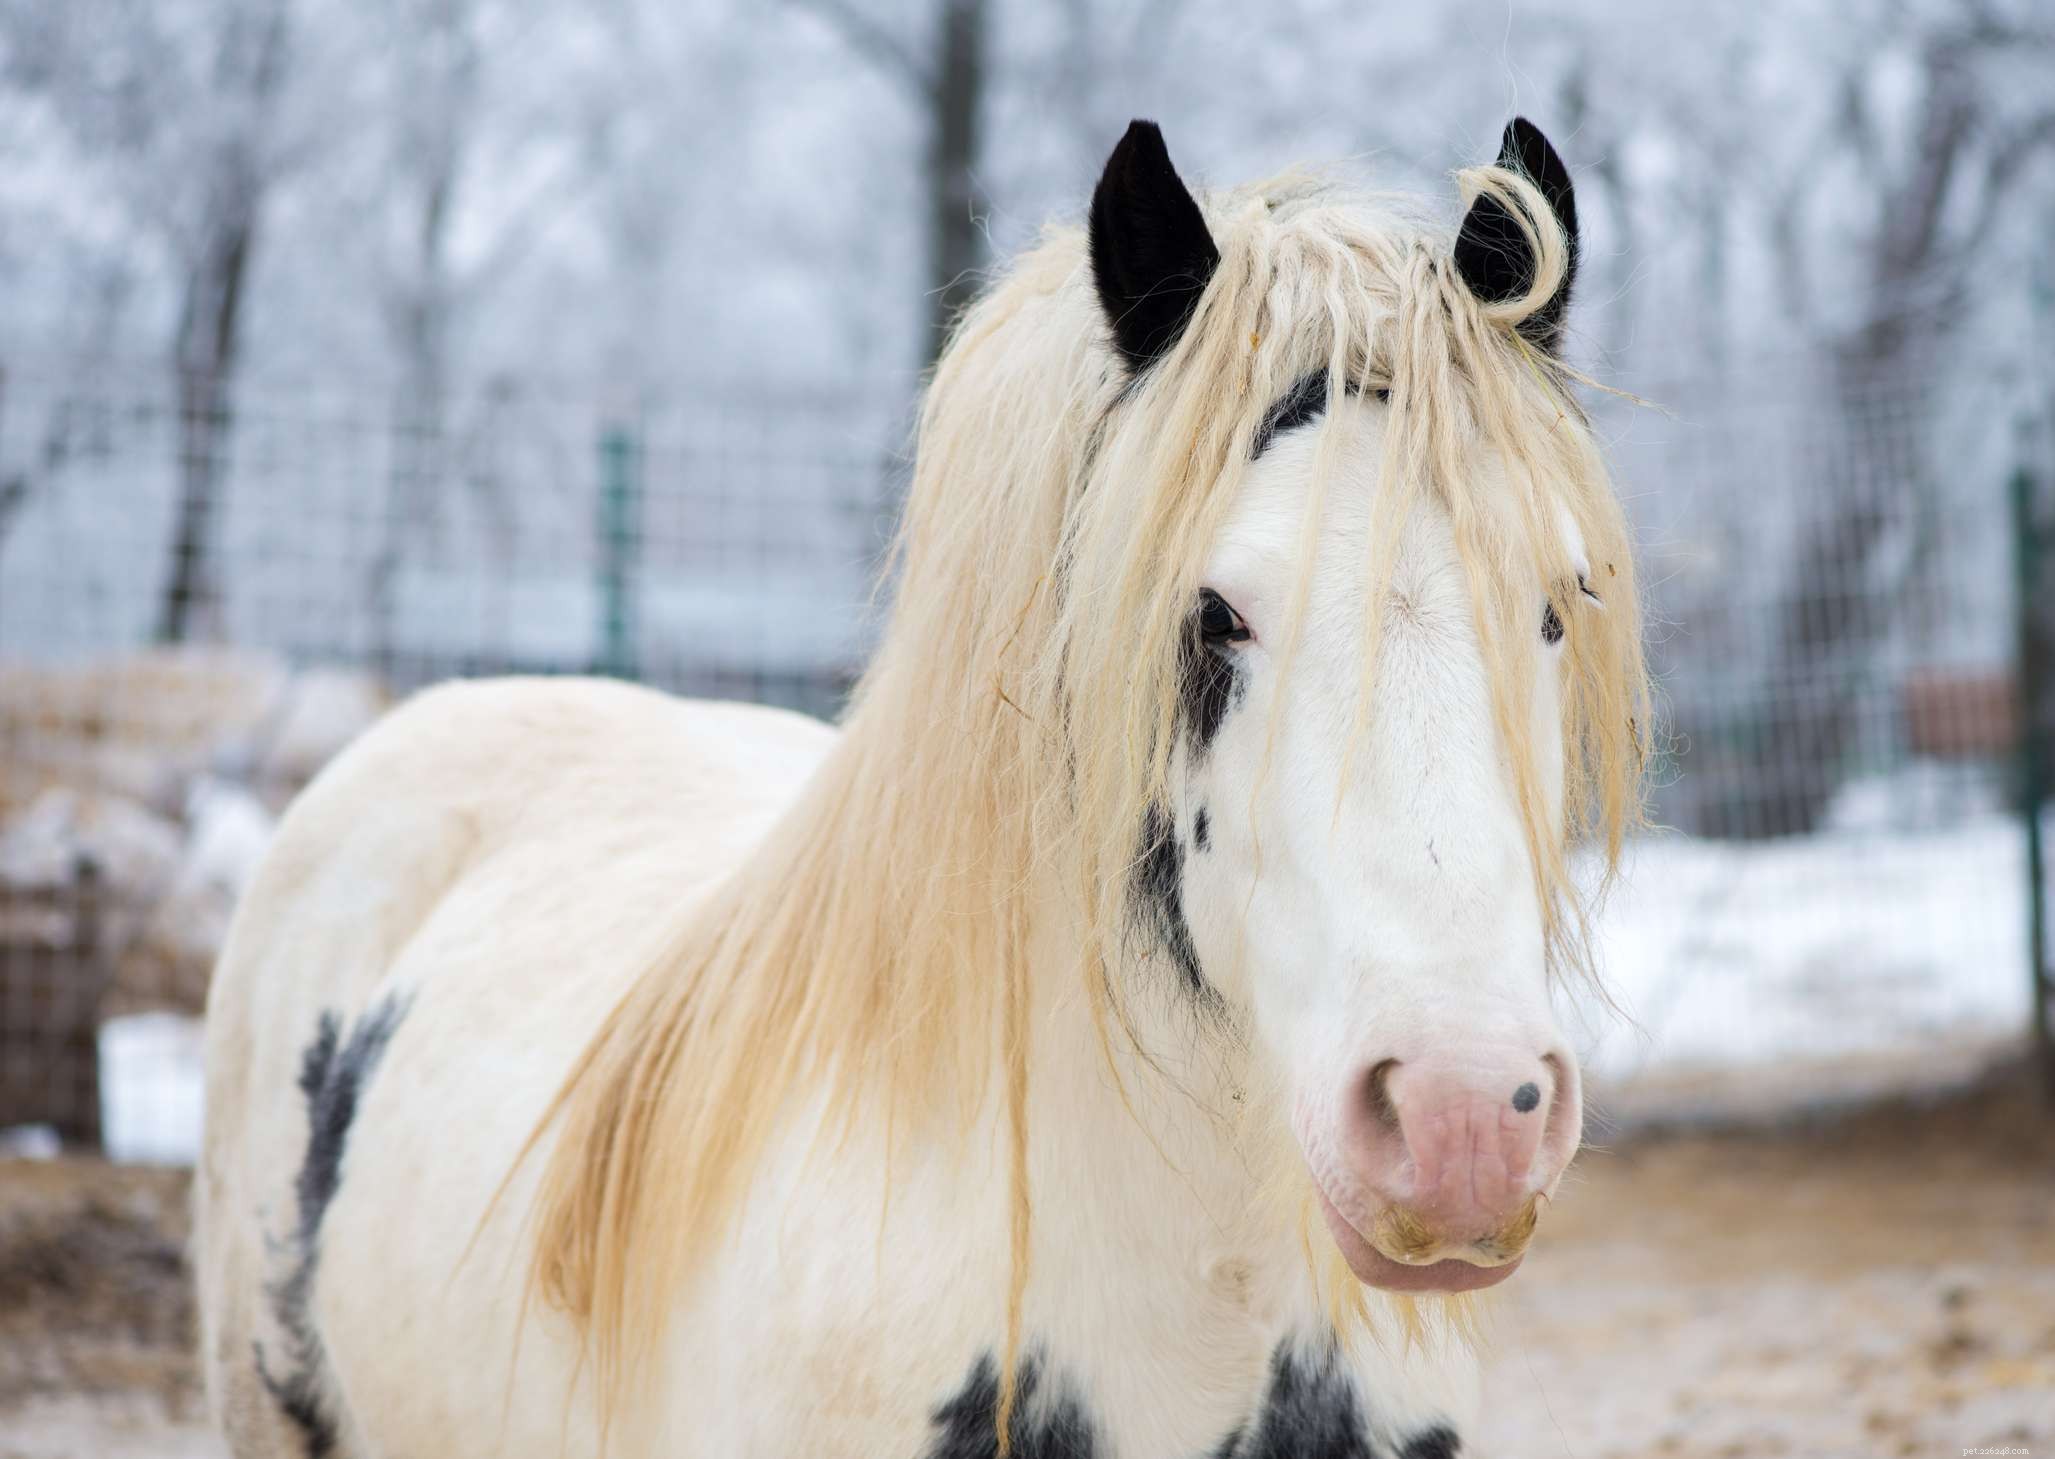 Gypsy Vanner :profil de race de cheval